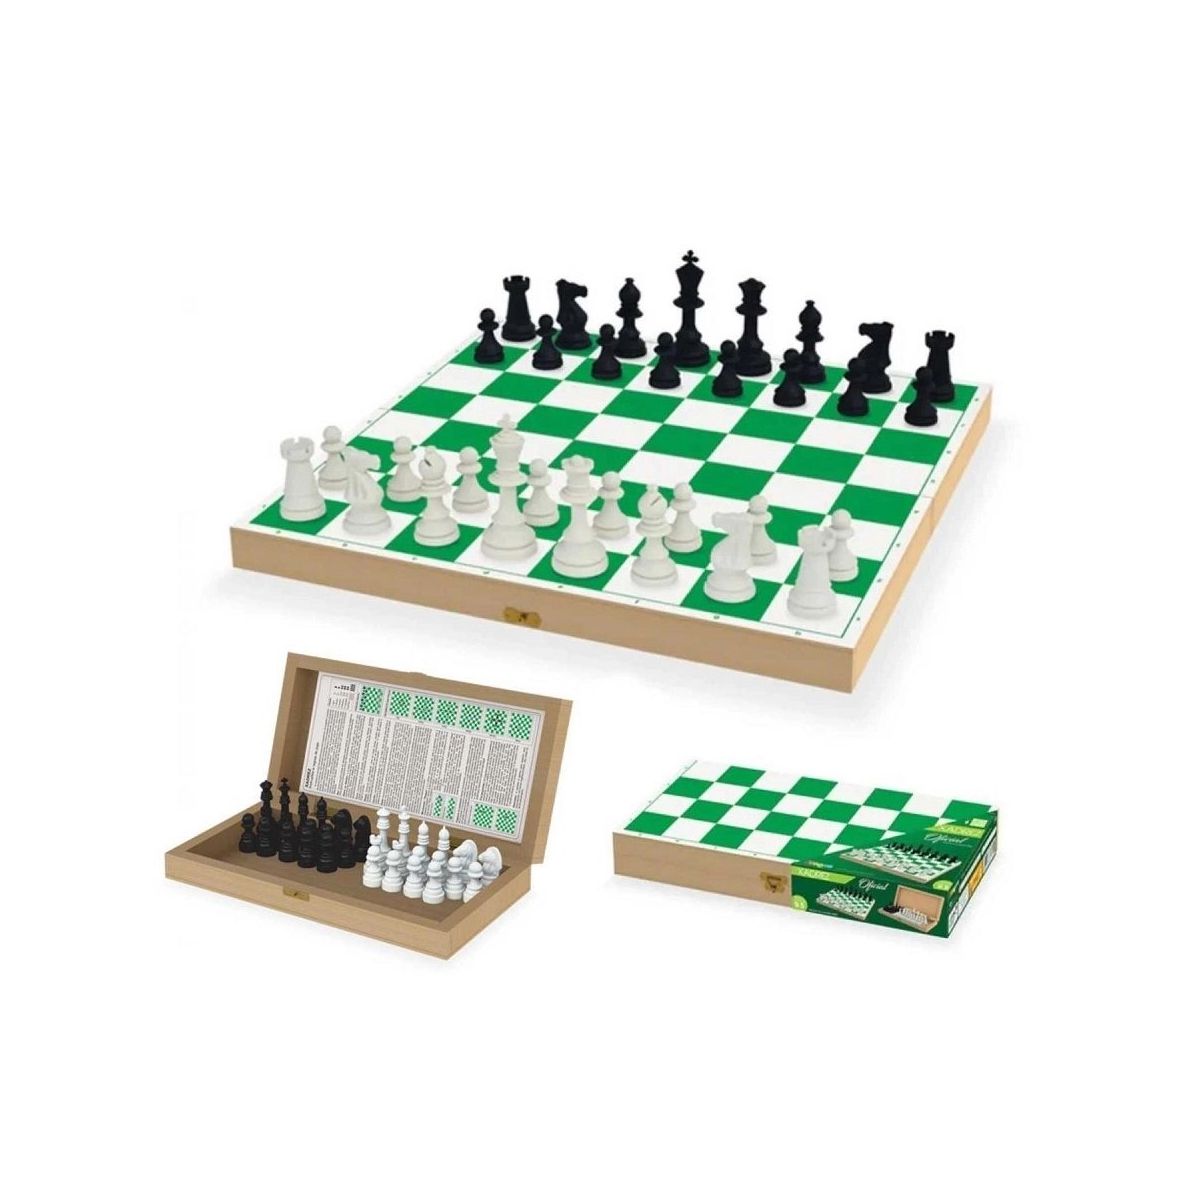 Xadrez xadrez rei xadrez xadrez de madeira vetor de xadrez